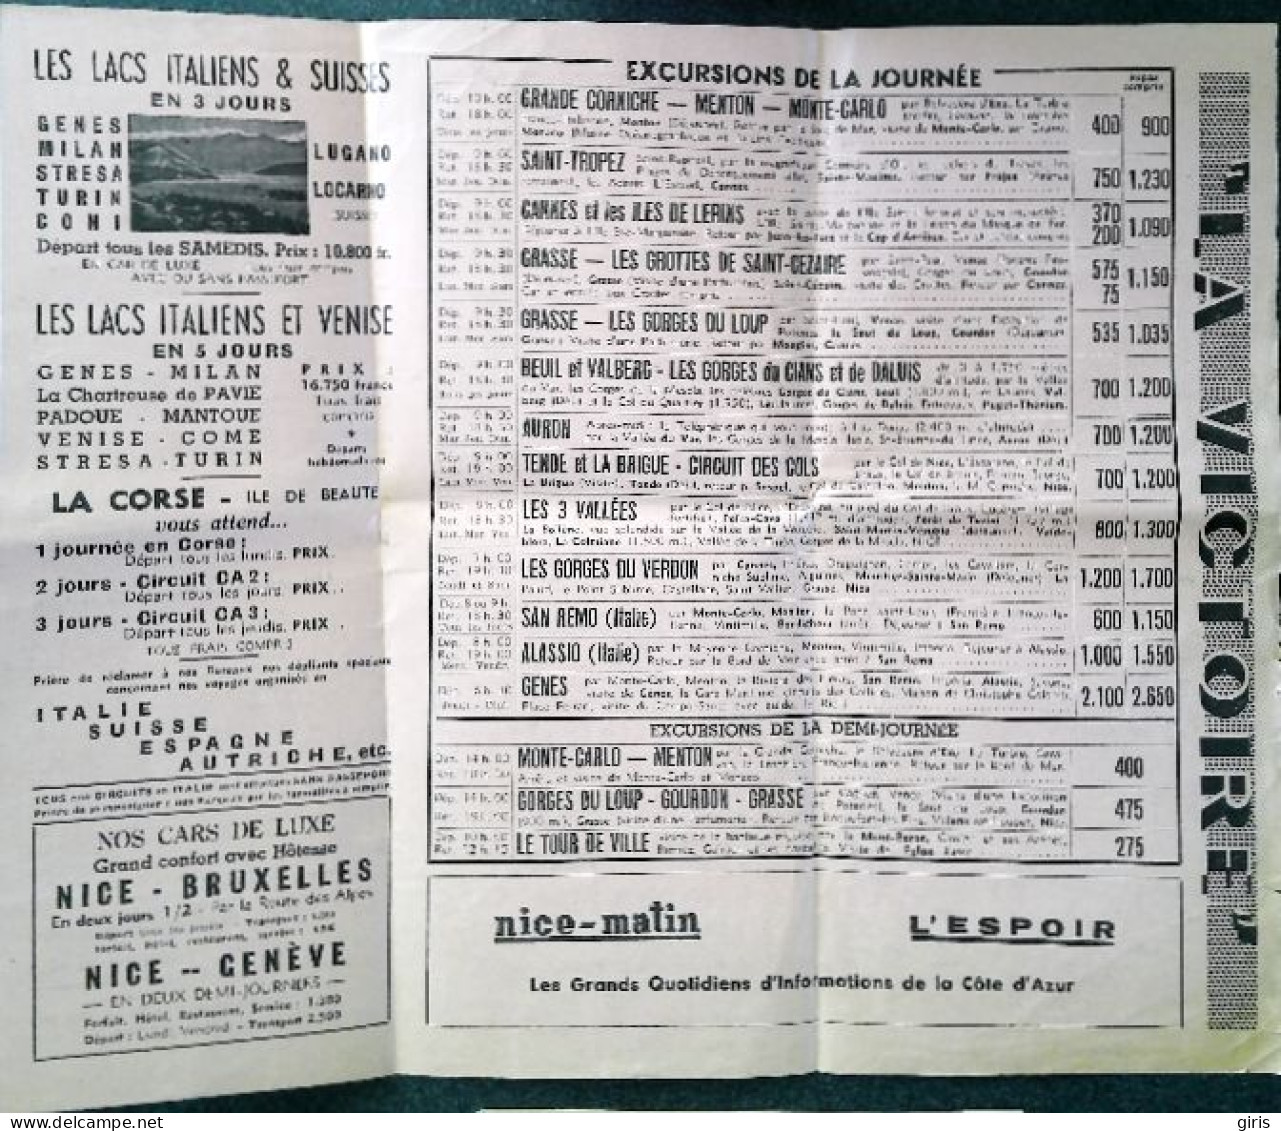 Vieux Papiers - Dépliants  - Excursions "La Victoire" - Nice Matin - L'Espoir - Saison 1952 - Cuadernillos Turísticos